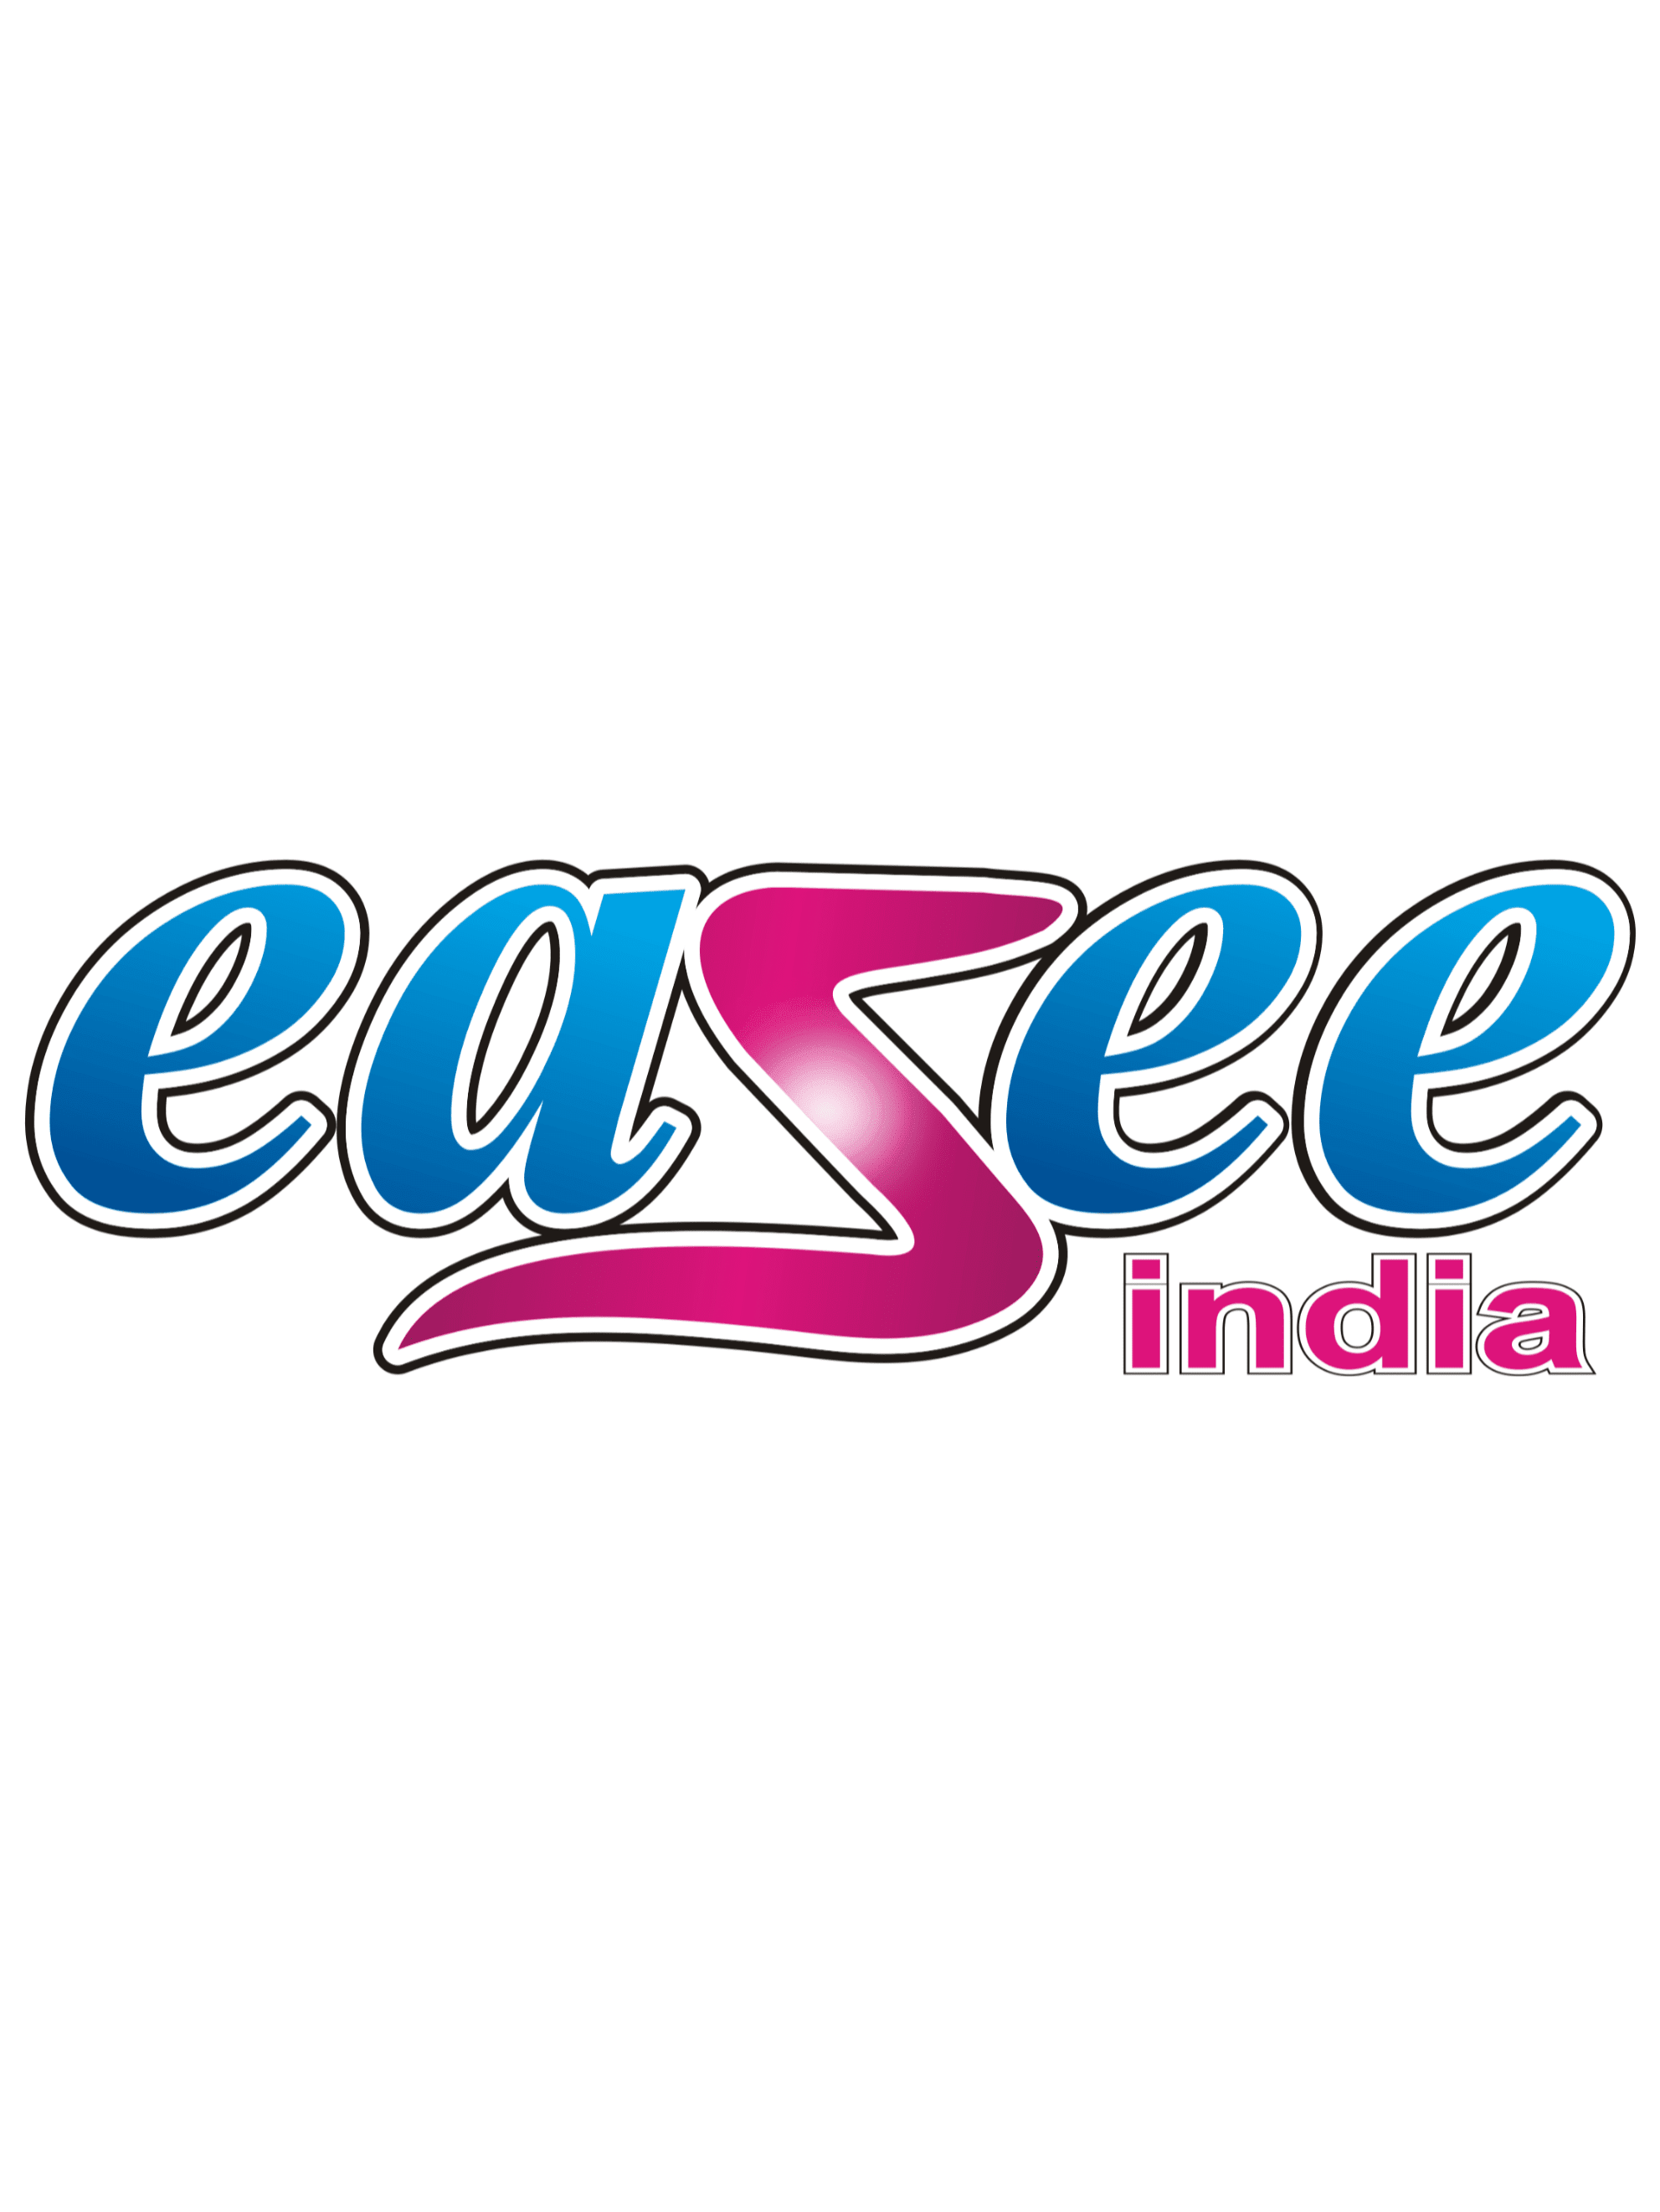 Easee India Enterprises